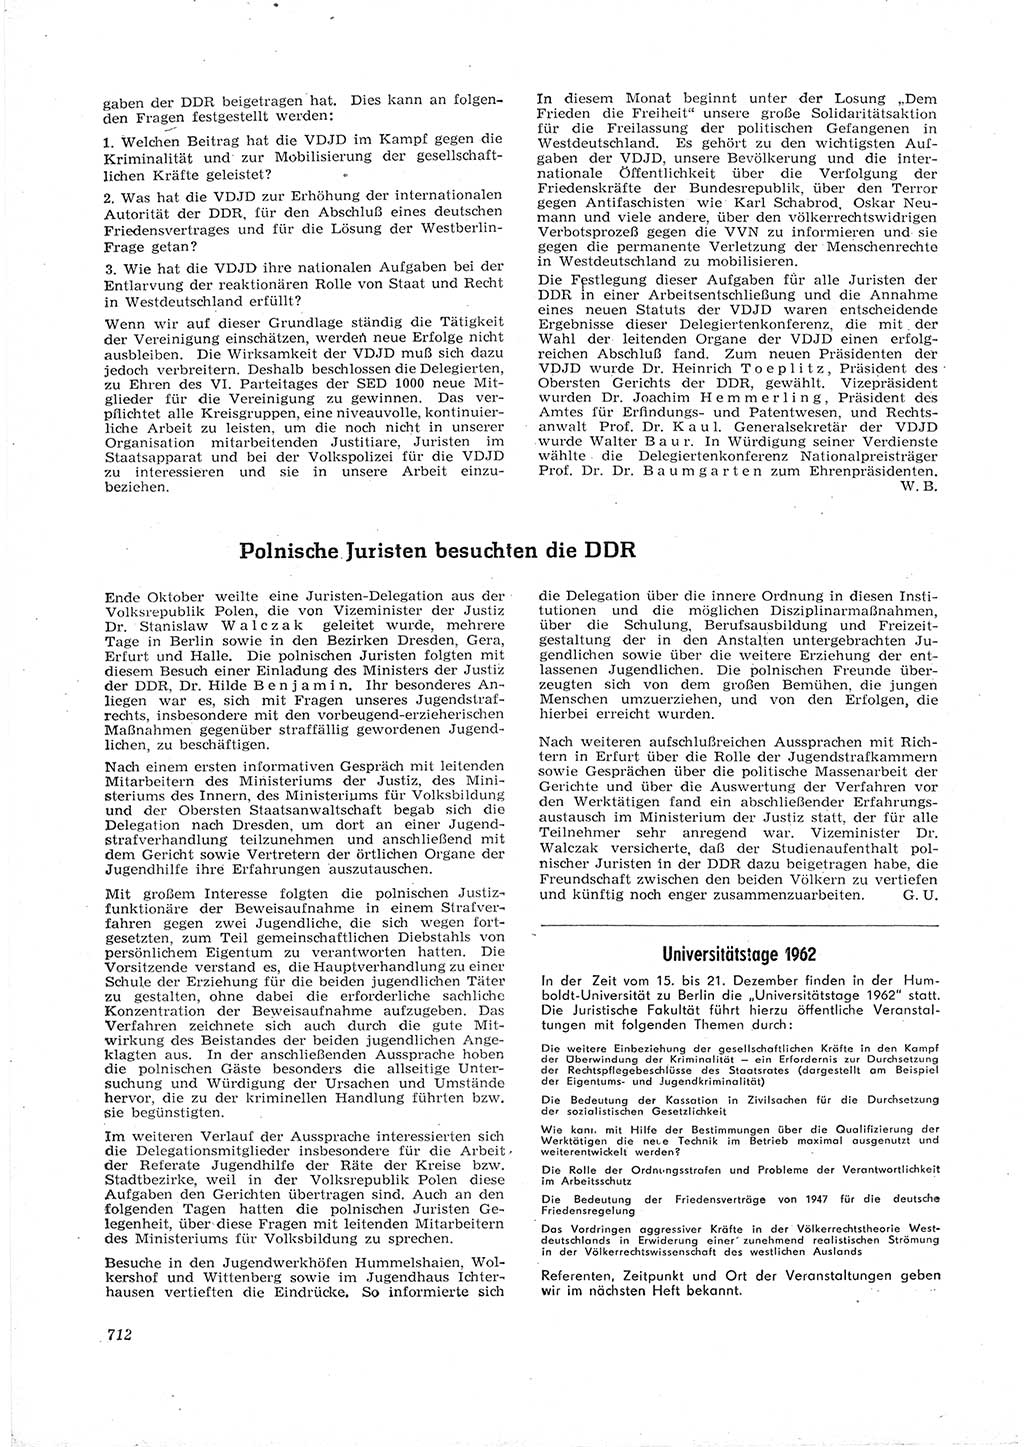 Neue Justiz (NJ), Zeitschrift für Recht und Rechtswissenschaft [Deutsche Demokratische Republik (DDR)], 16. Jahrgang 1962, Seite 712 (NJ DDR 1962, S. 712)